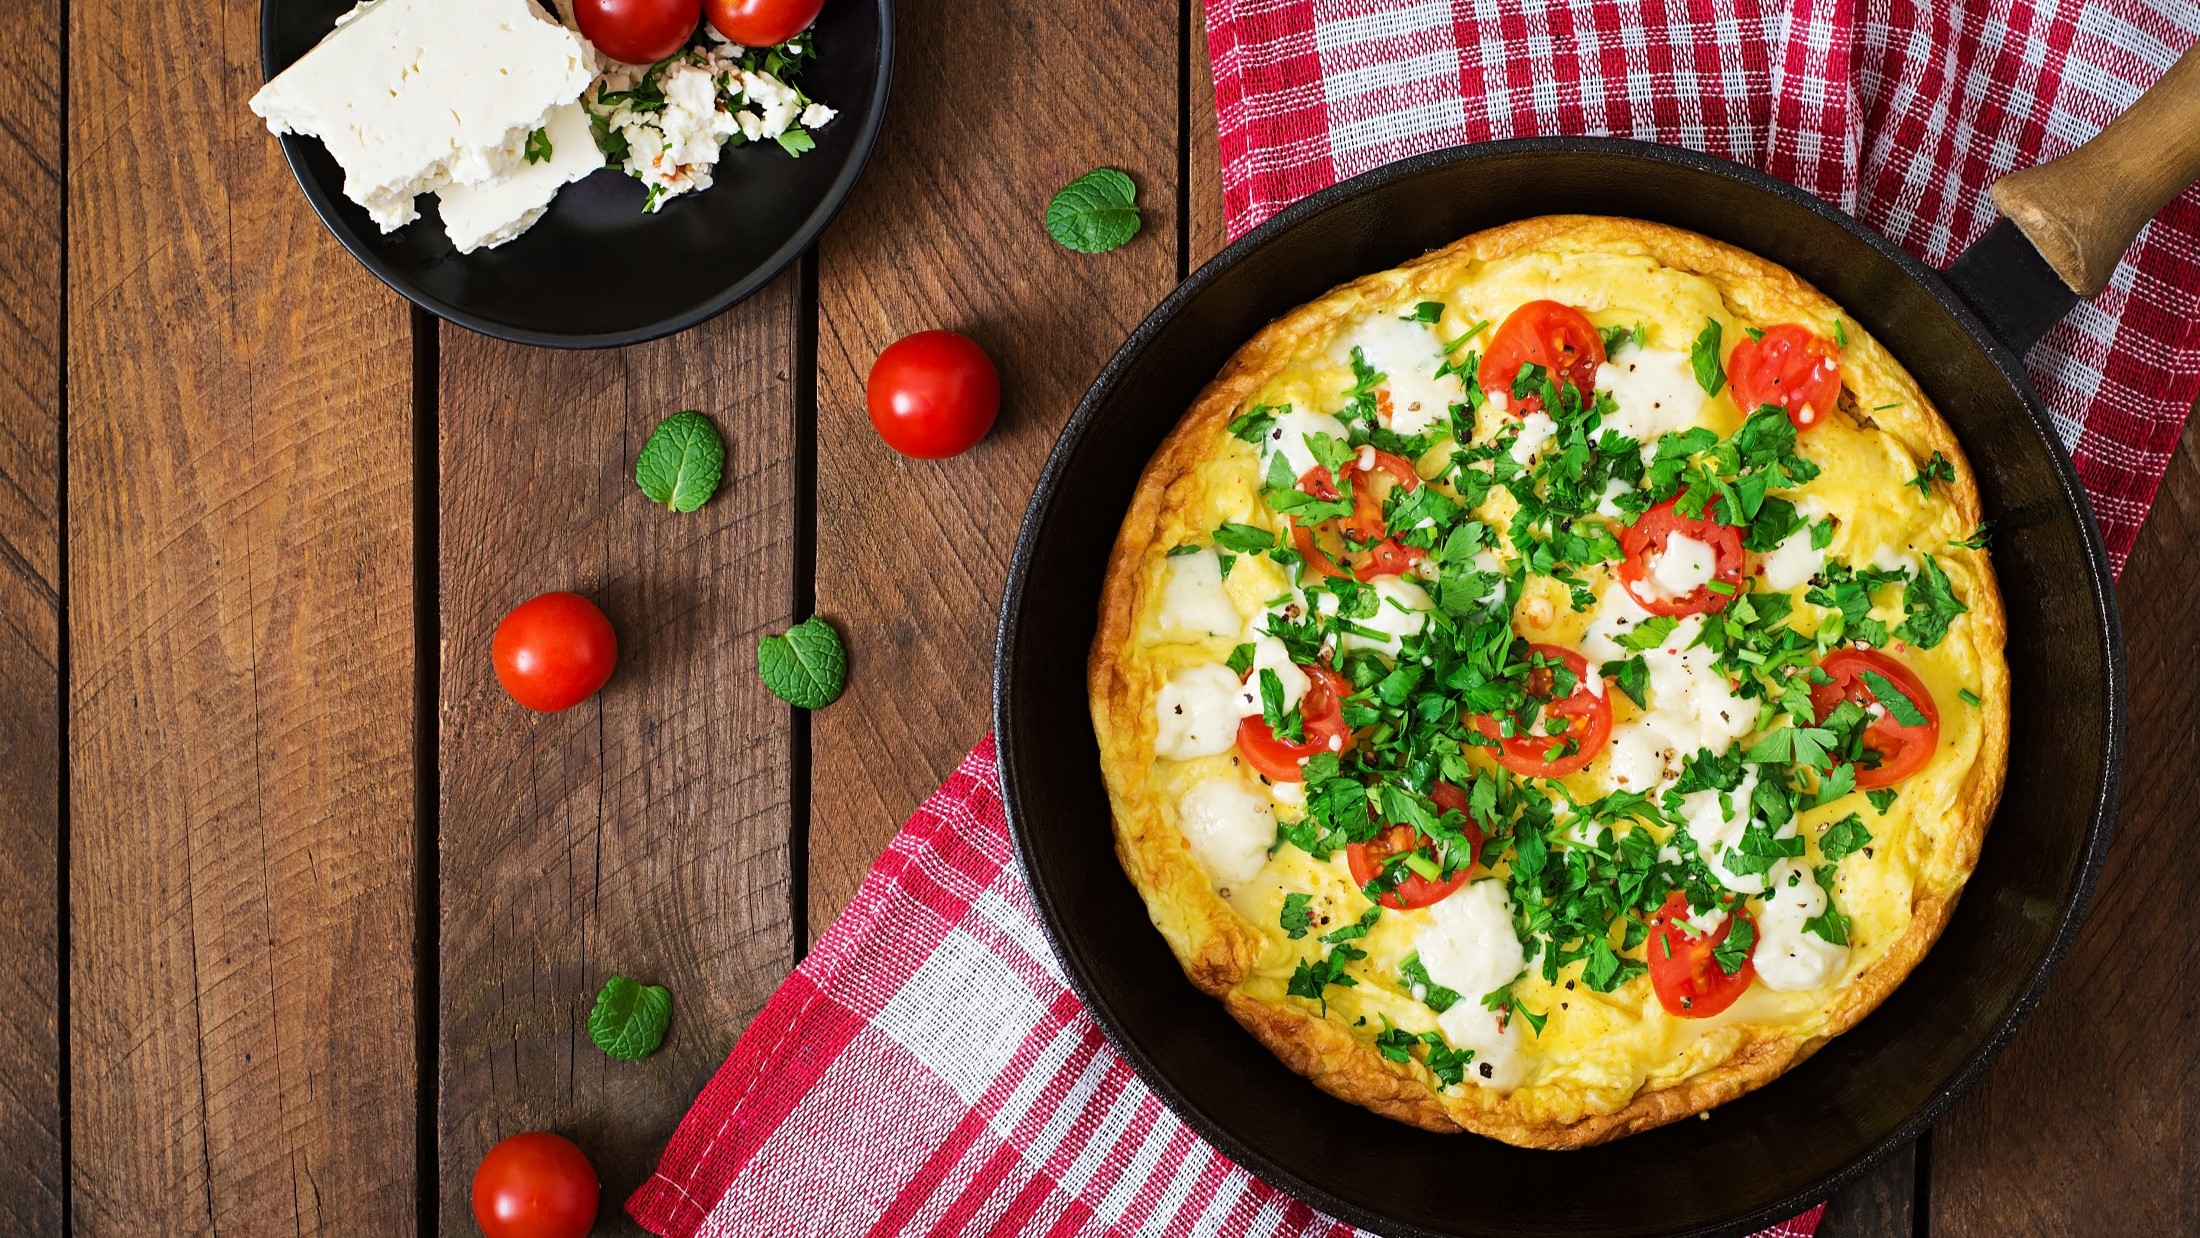 Draufsicht: Eine Pfanne mit einem Tomaten-Omelett mit Feta und Petersilie liegt auf einem rustikalen Holzuntergrund. Drum herum liegen frische Tomaten sowie ein rot-weiß-kariertes Küchentuch.